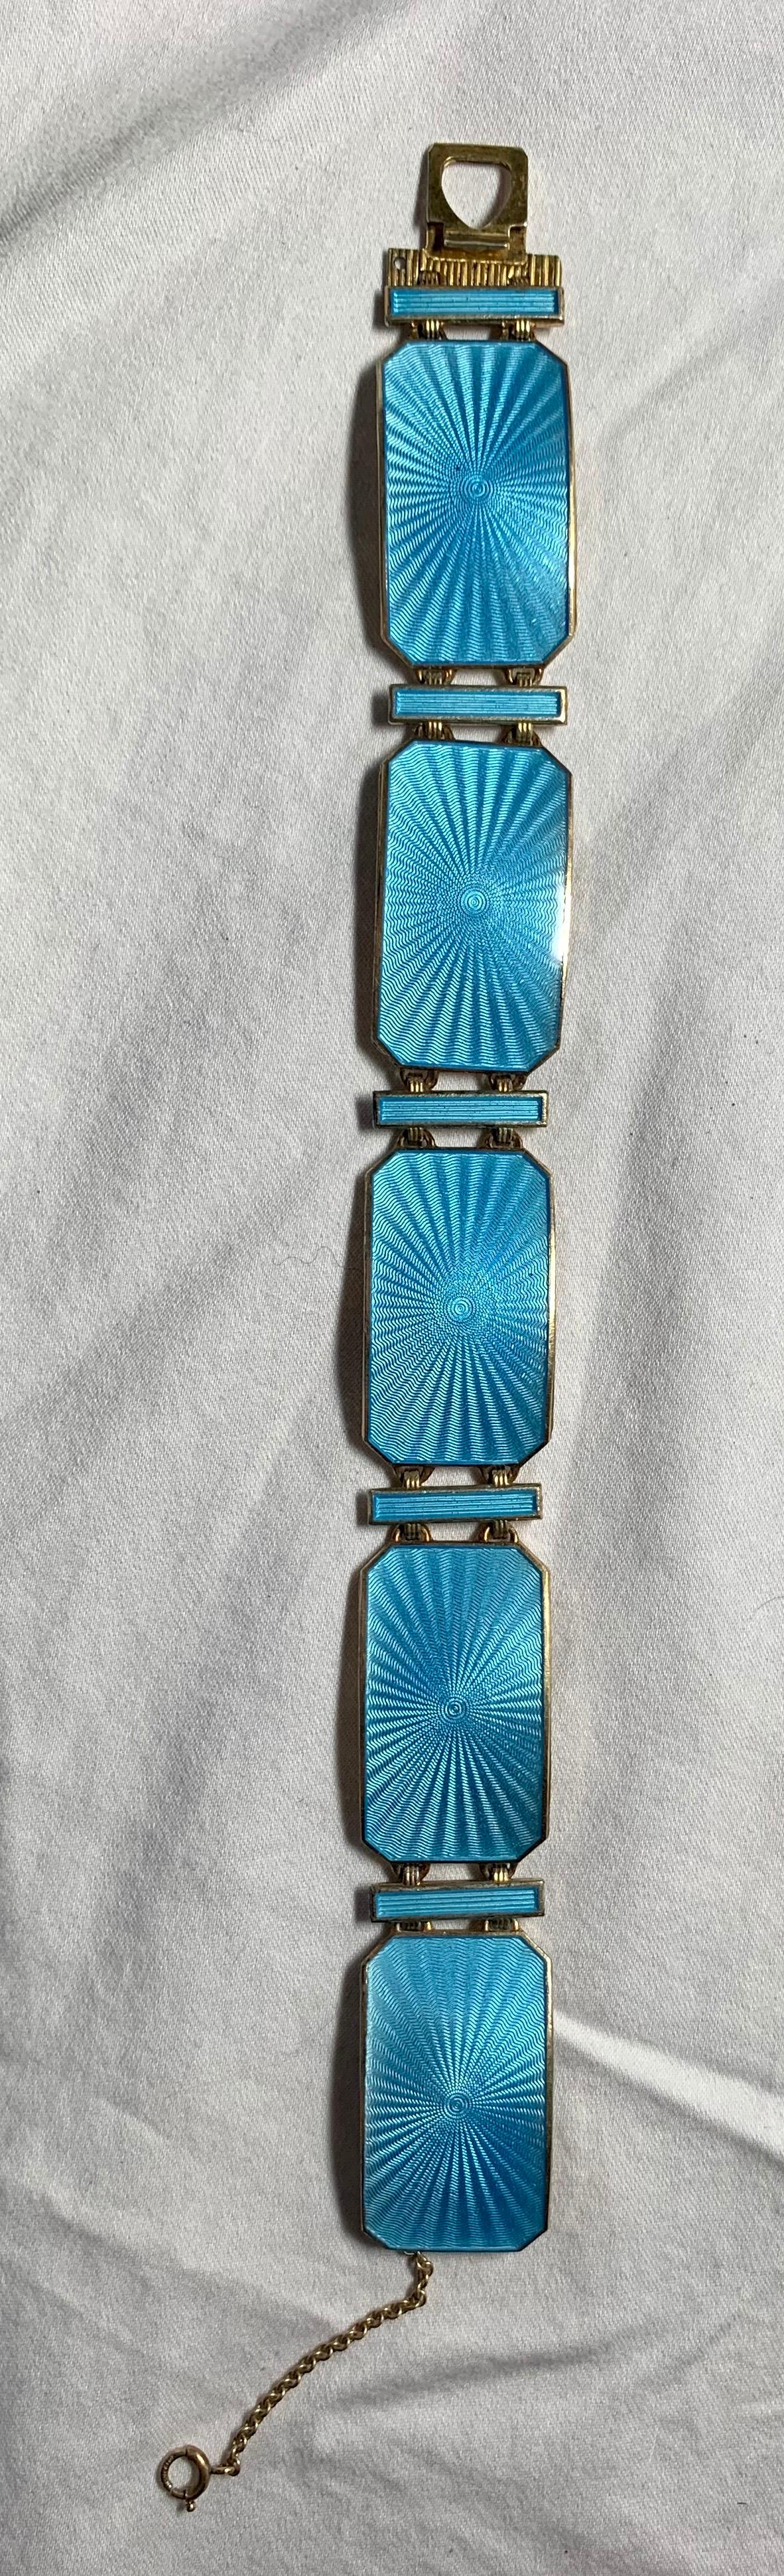 Un exquis bracelet en émail guilloché bleu œuf de mer de la période Mid-Century Modern Eames Era par l'orfèvre norvégien estimé Albert Scharning dans un incroyable design en émail bleu.  Ce bracelet est l'un des plus beaux bijoux en émail scandinave